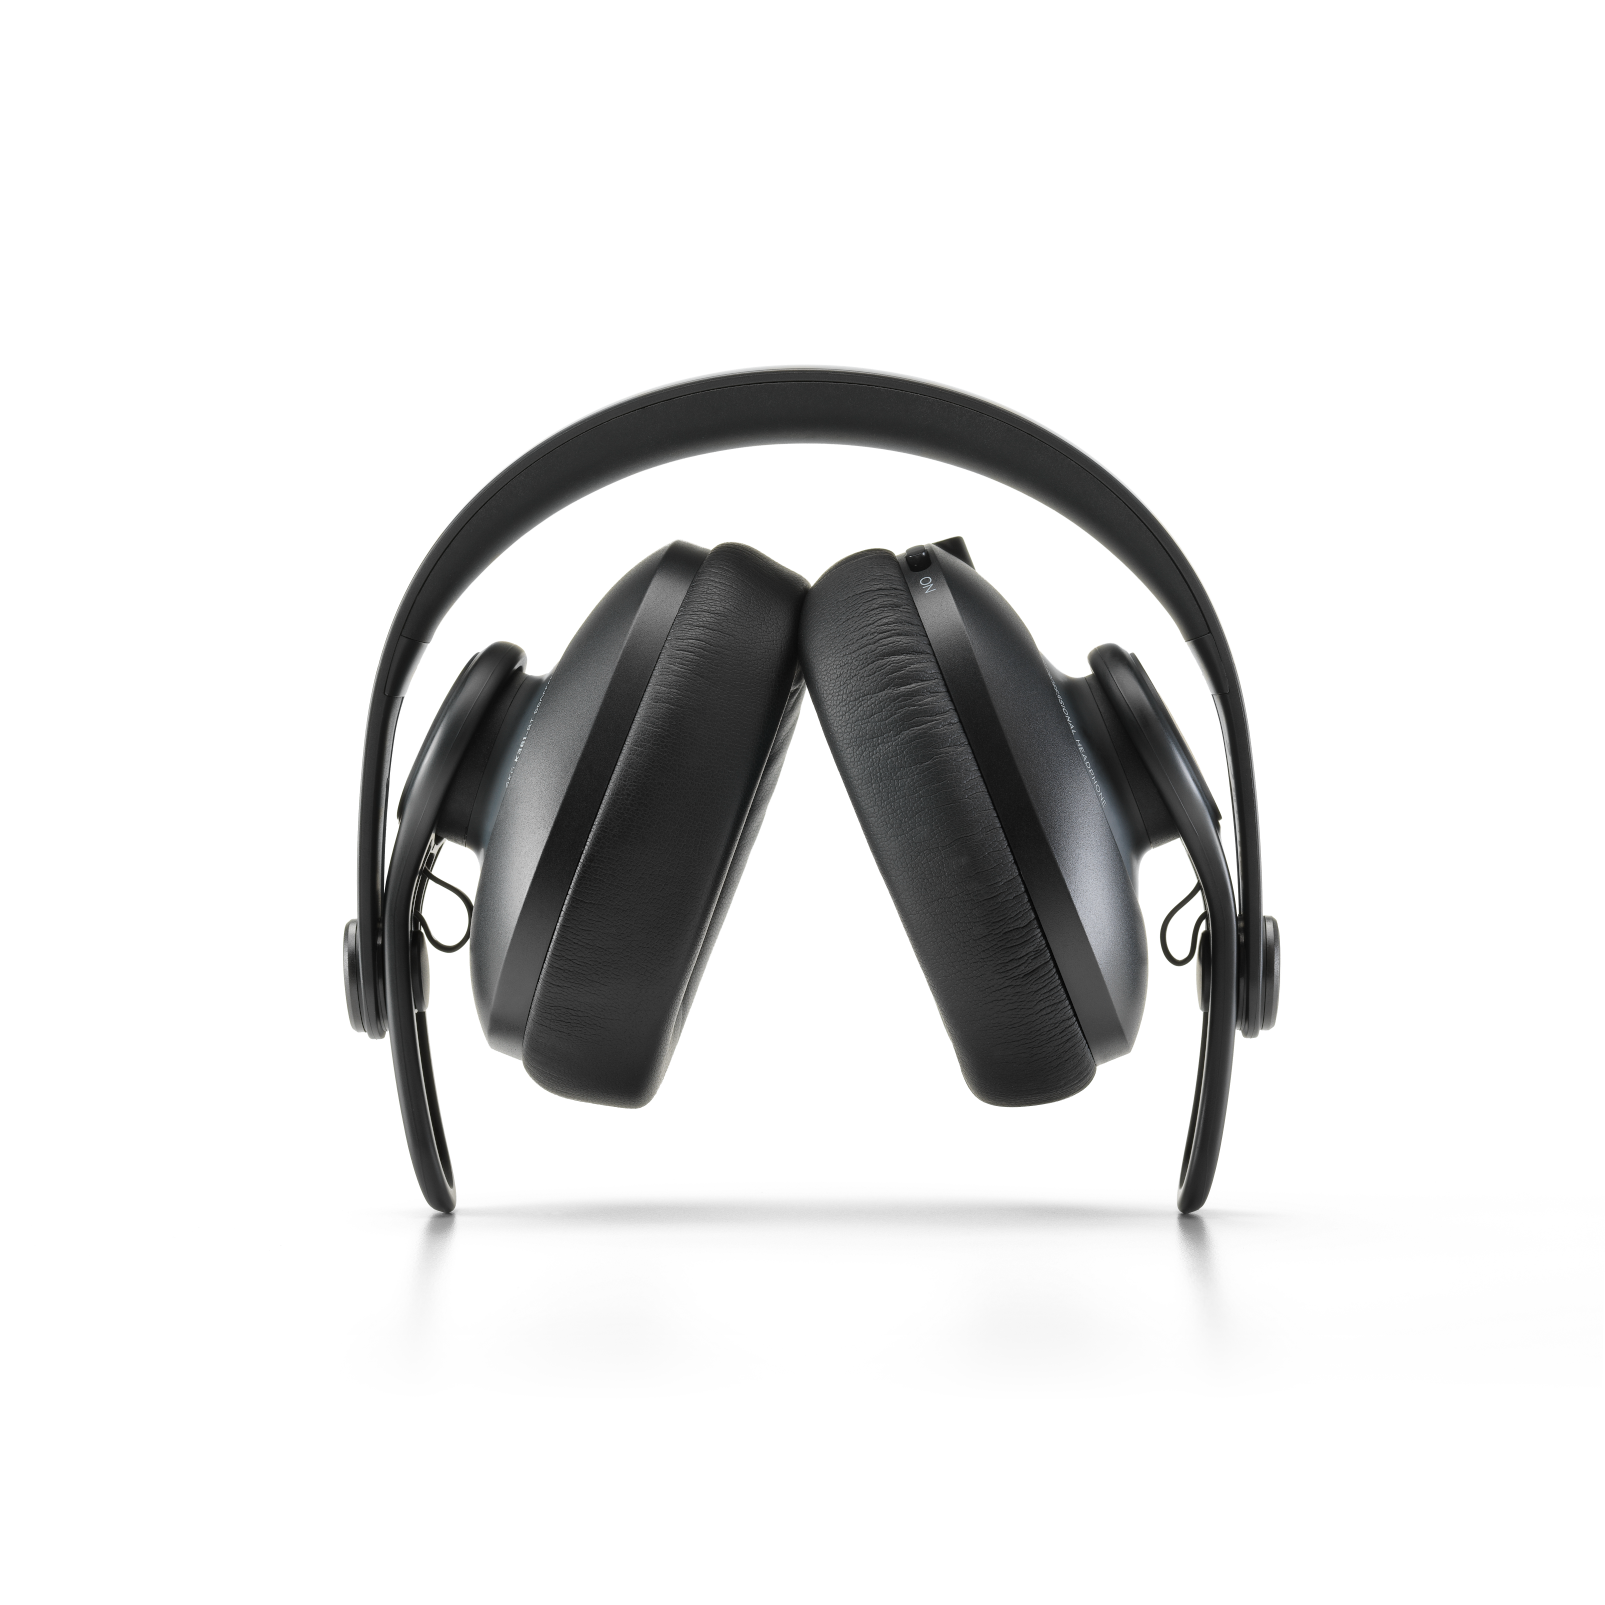 K361-BT - Black - Over-ear, closed-back, foldable studio headphones with Bluetooth - Detailshot 1